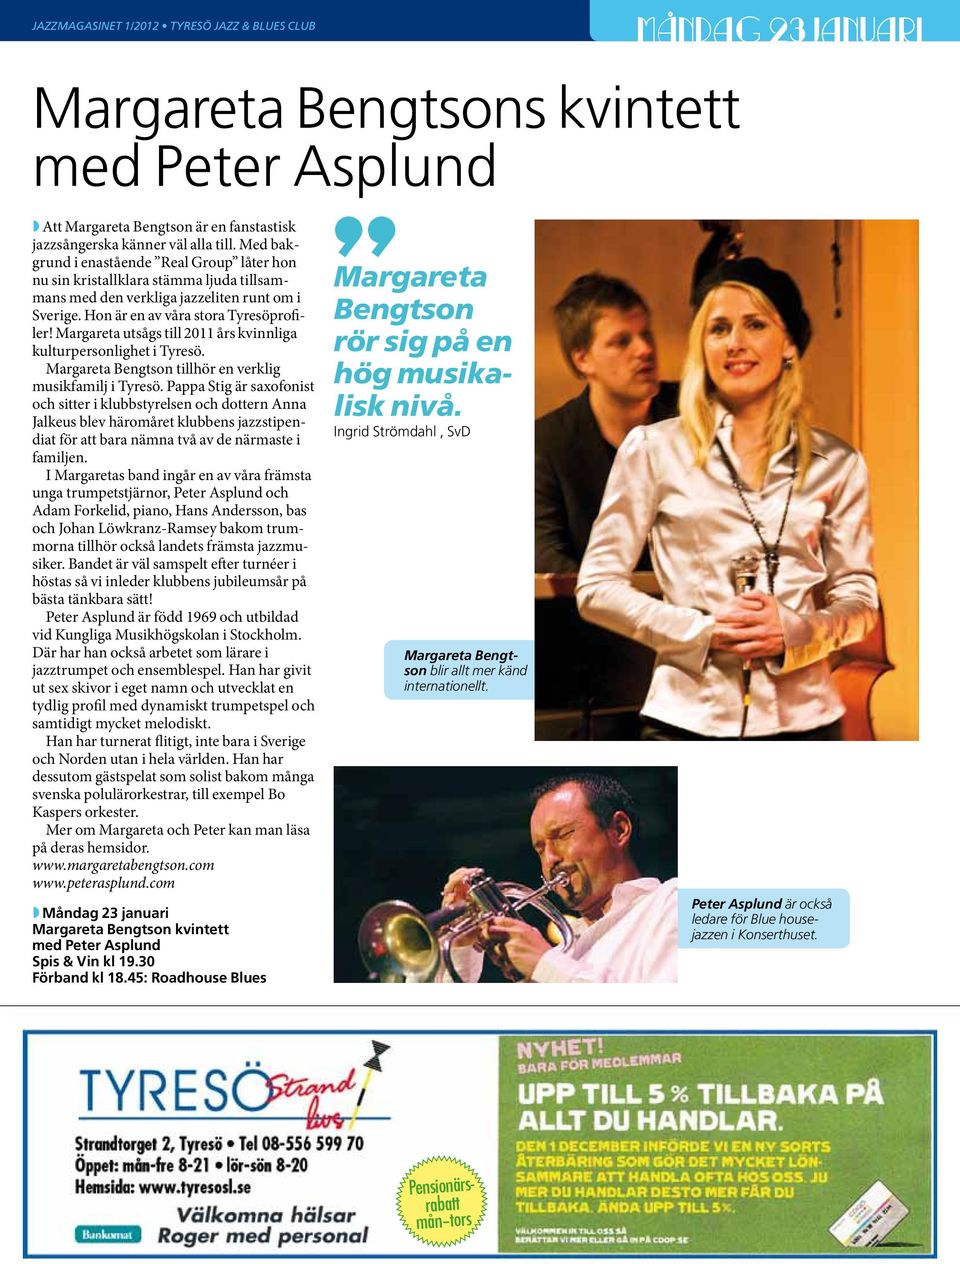 Margareta utsågs till 2011 års kvinnliga kulturpersonlighet i Tyresö. Margareta Bengtson tillhör en verklig musikfamilj i Tyresö.